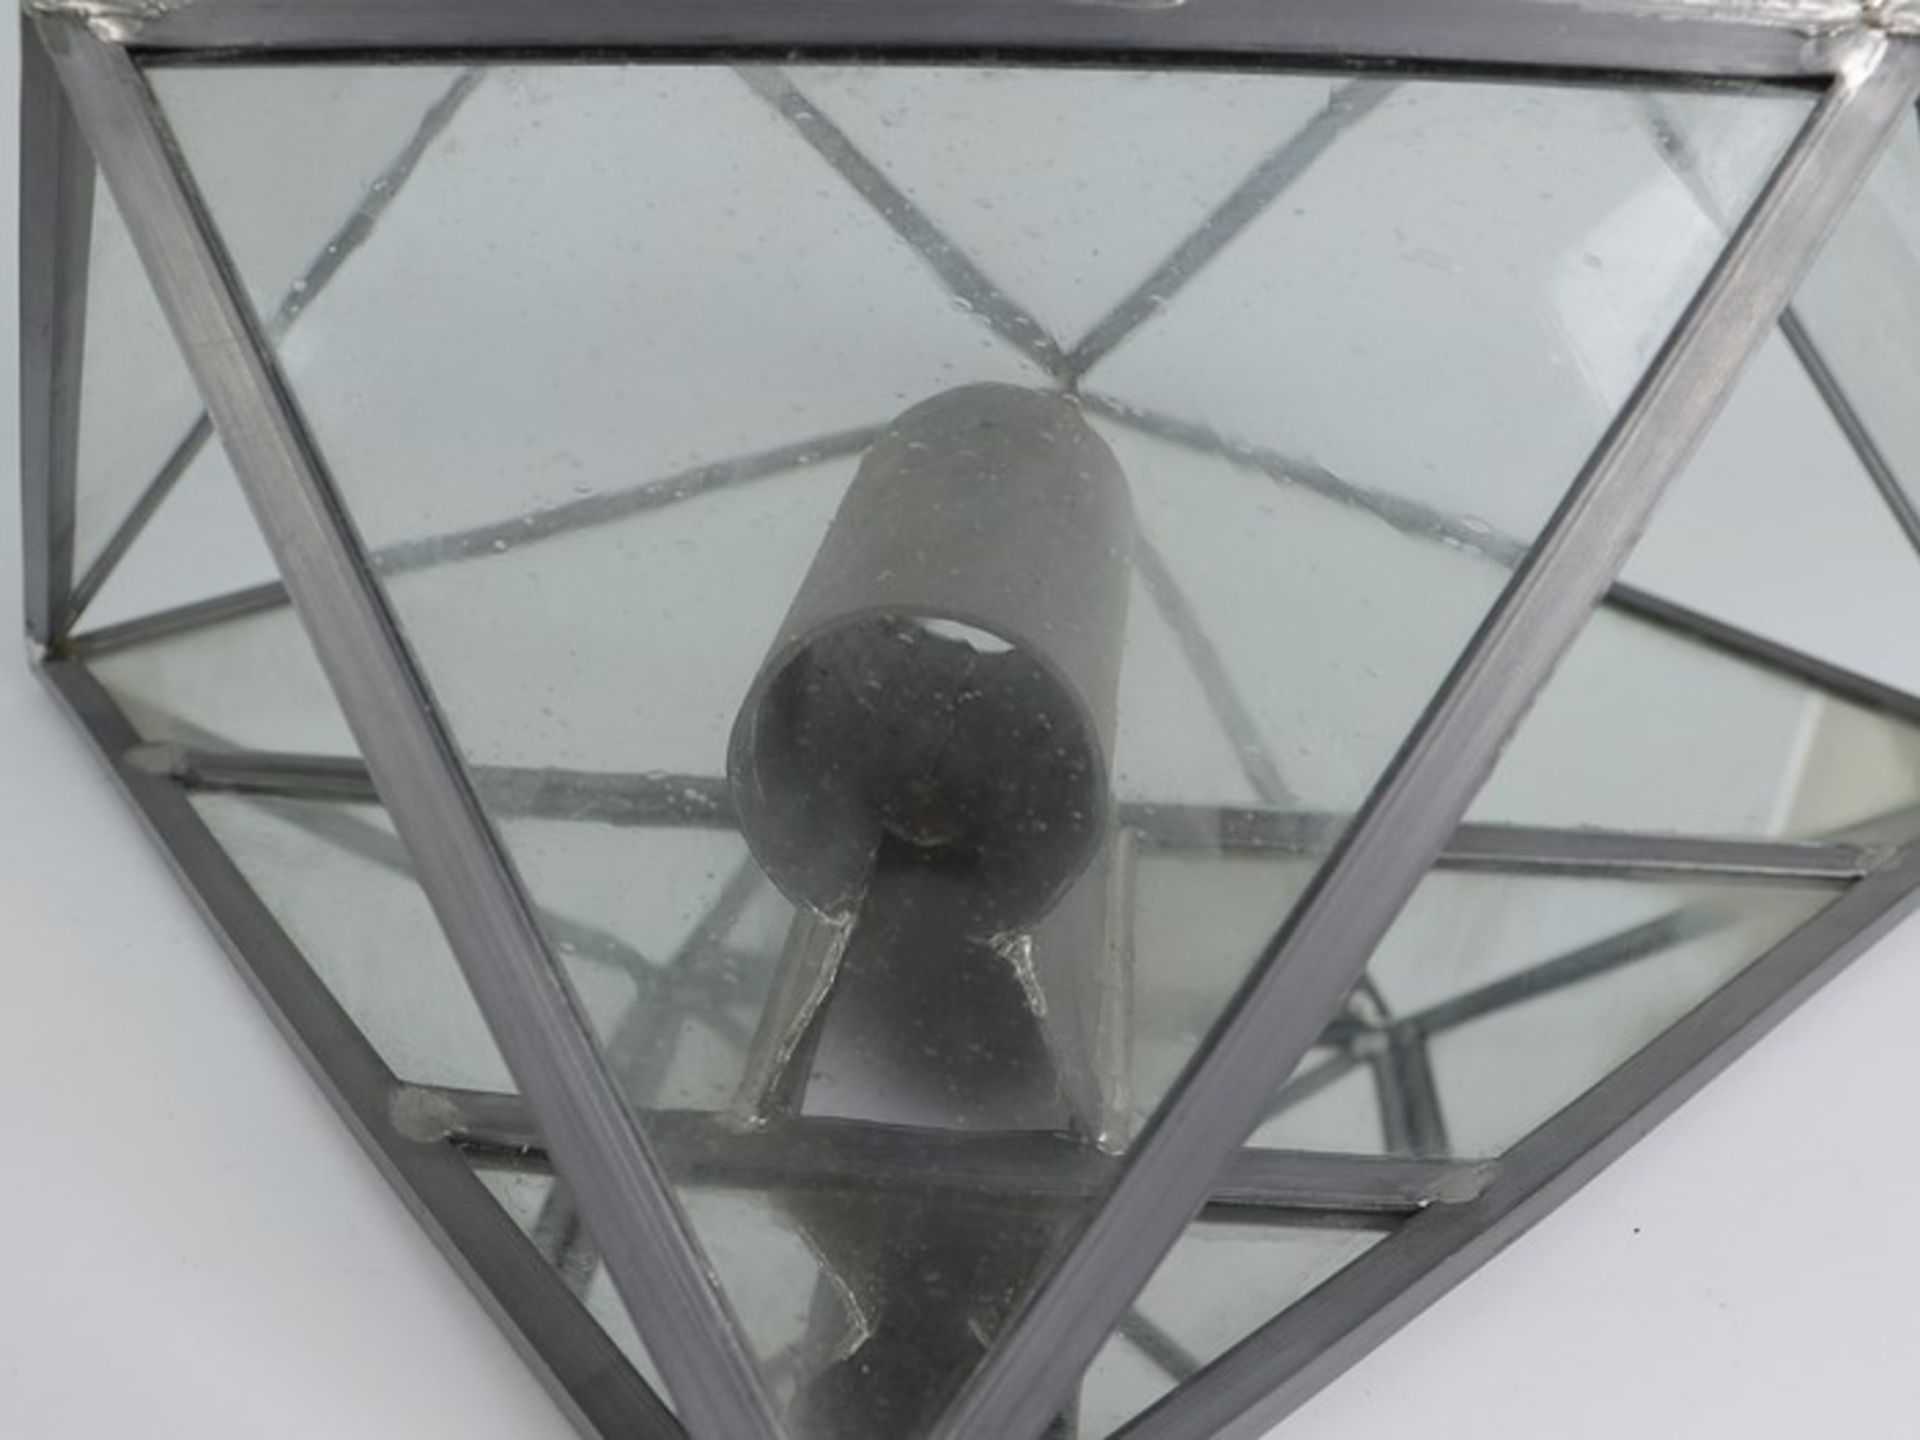 Wandlampen - PendantMetall/Glas, einflammig, Bleiverglasung, Blaseneinschlüsse, quadratisches - Bild 3 aus 4